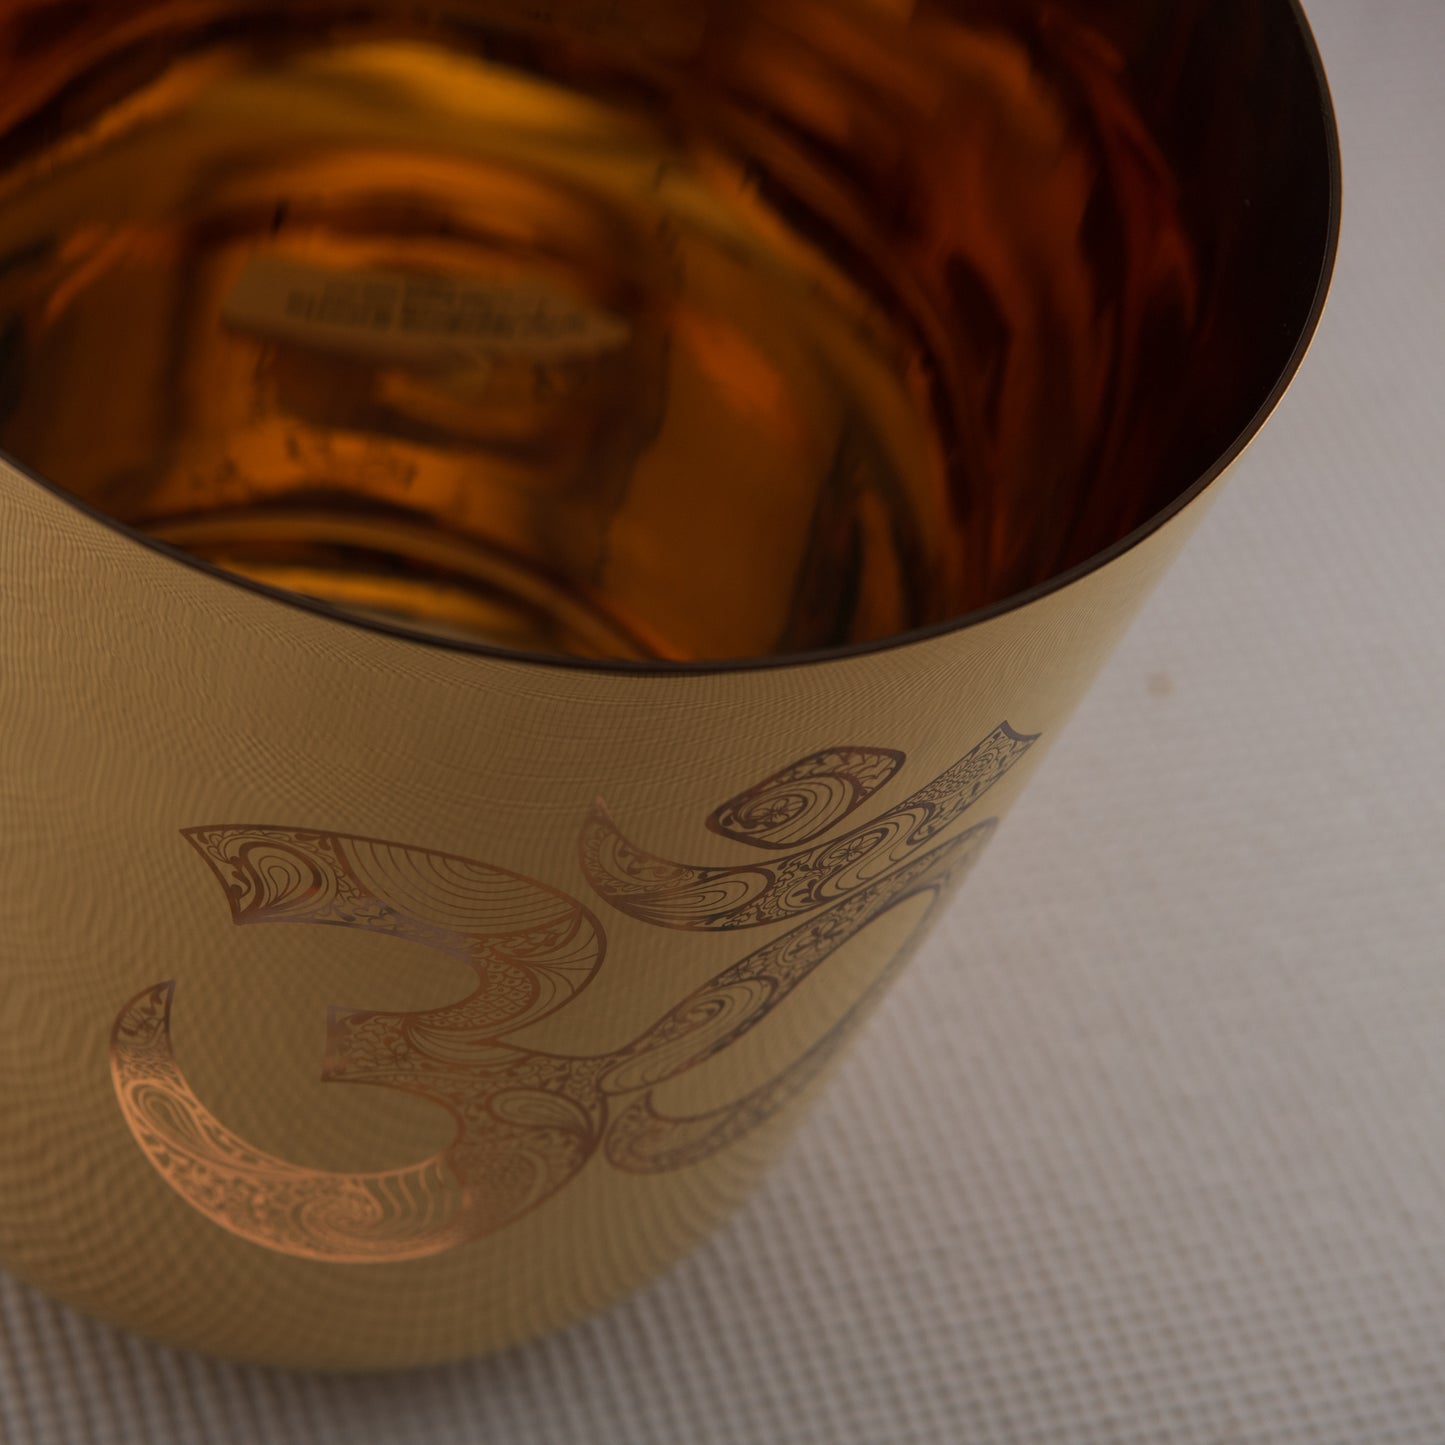 9" C-11 Gold Crystal Singing Bowl with Sacred Om Symbol, Sacred Singing Bowls